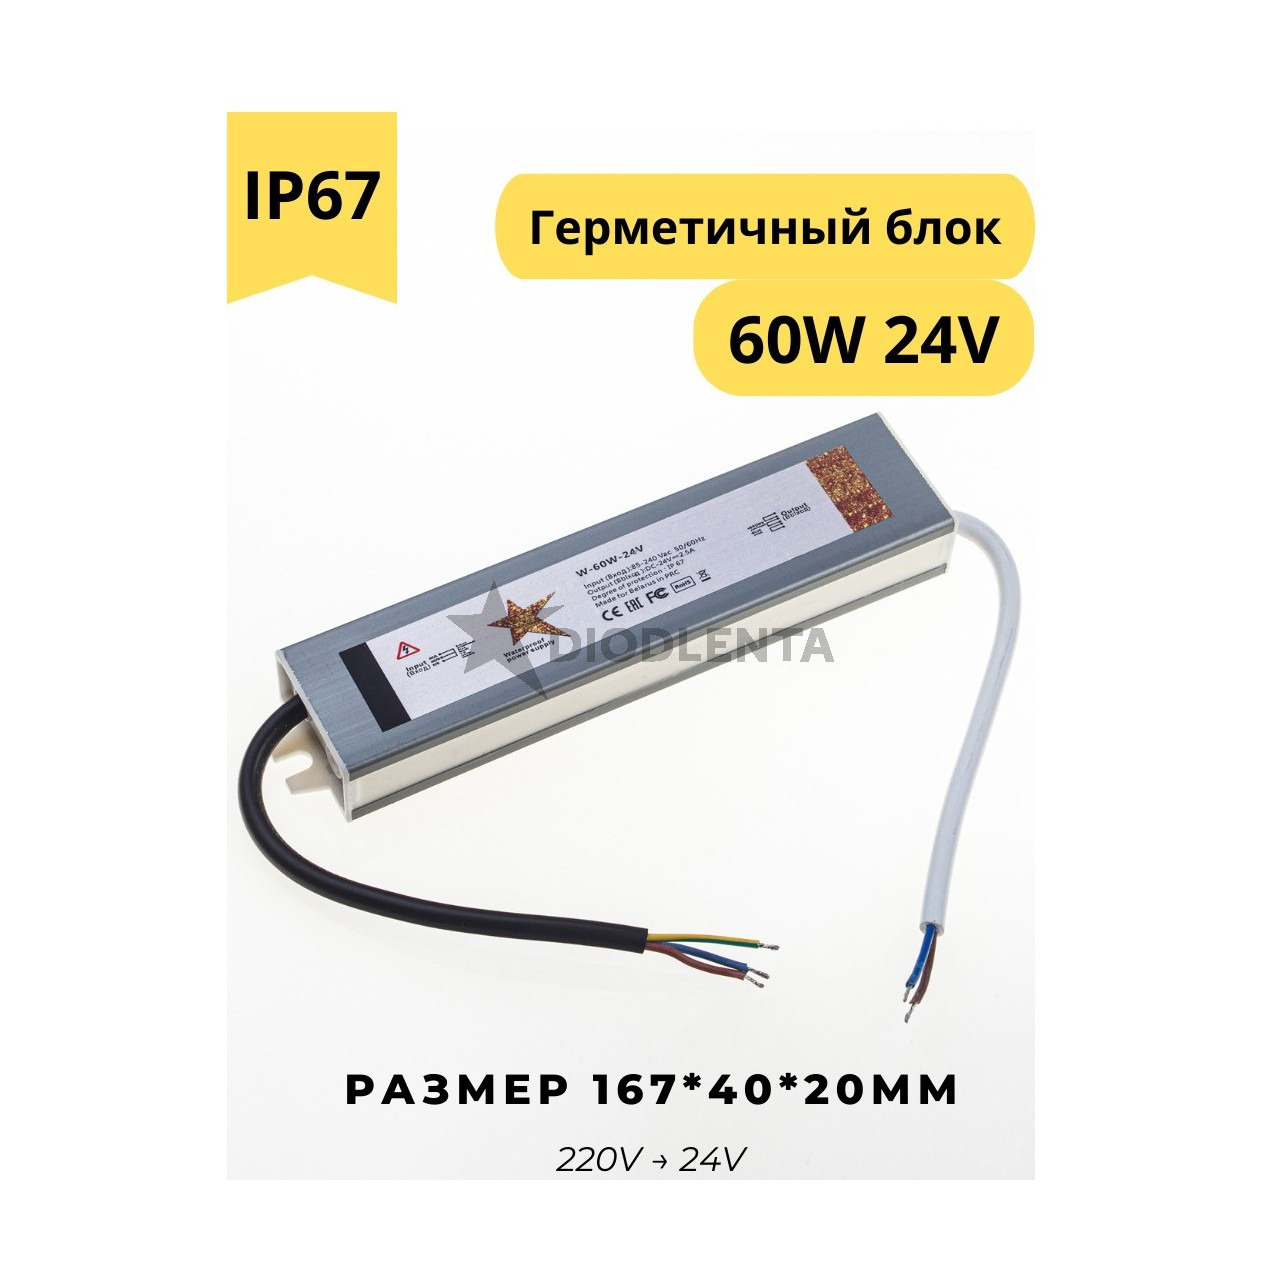 Герметичный блок питания W-60w-24v IP67 для светодиодных лент